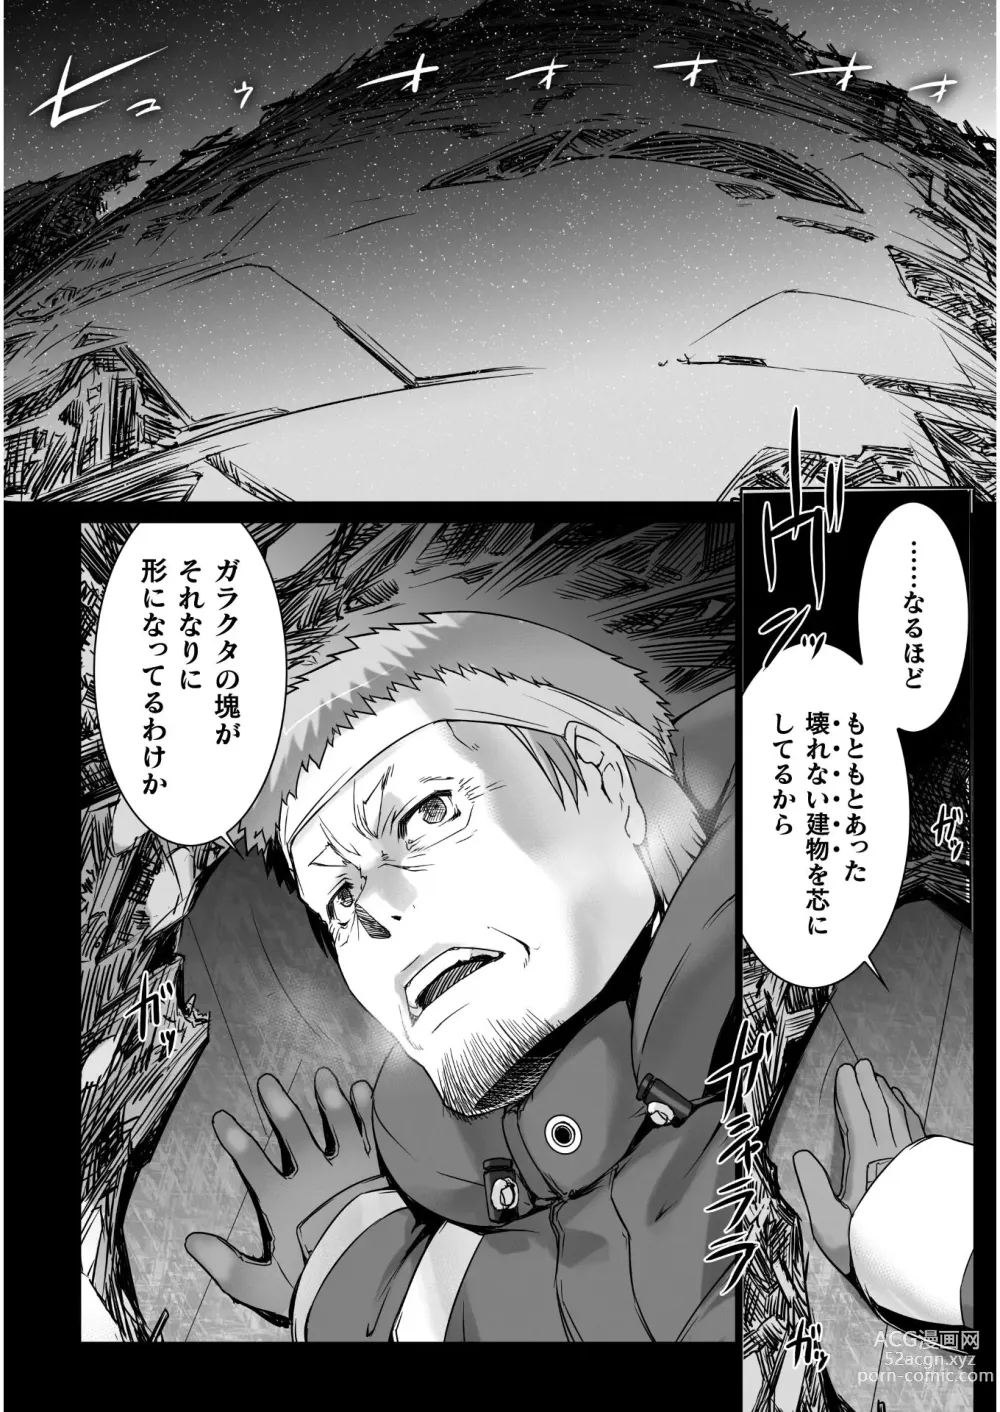 Page 290 of manga Ziggurat Ch. 51 - 62